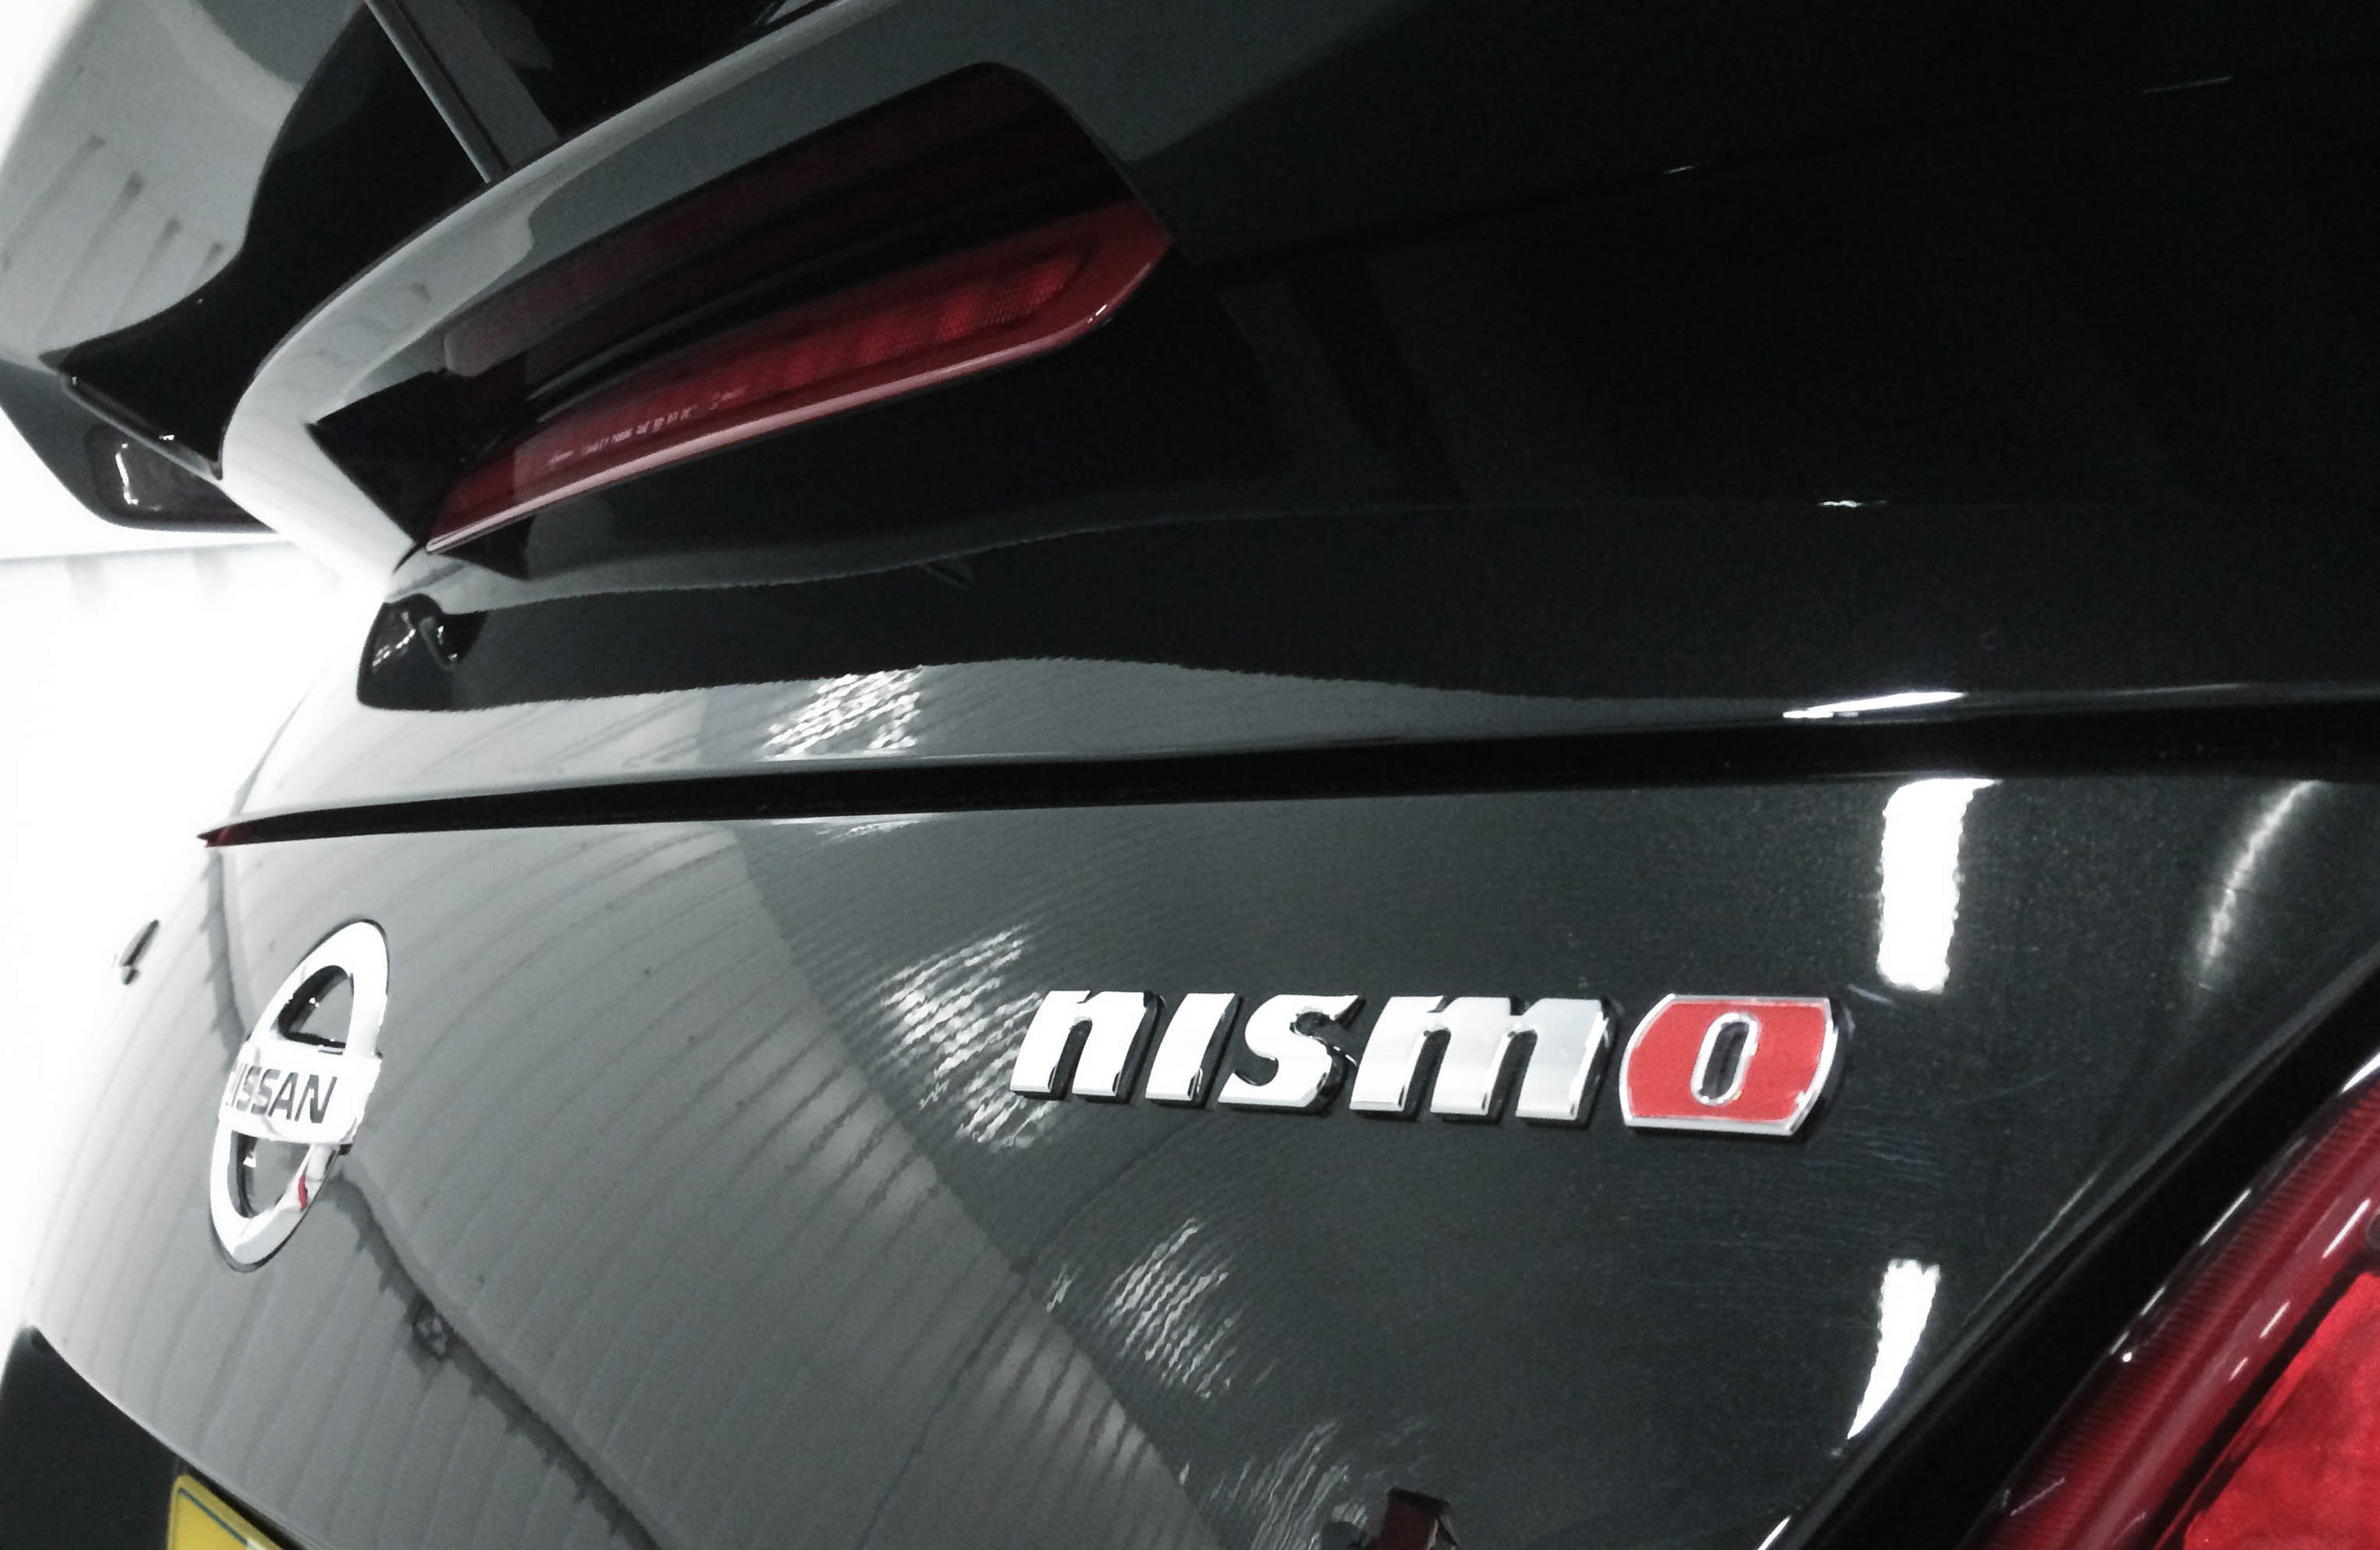 Nissan 370z Nismo – Badge